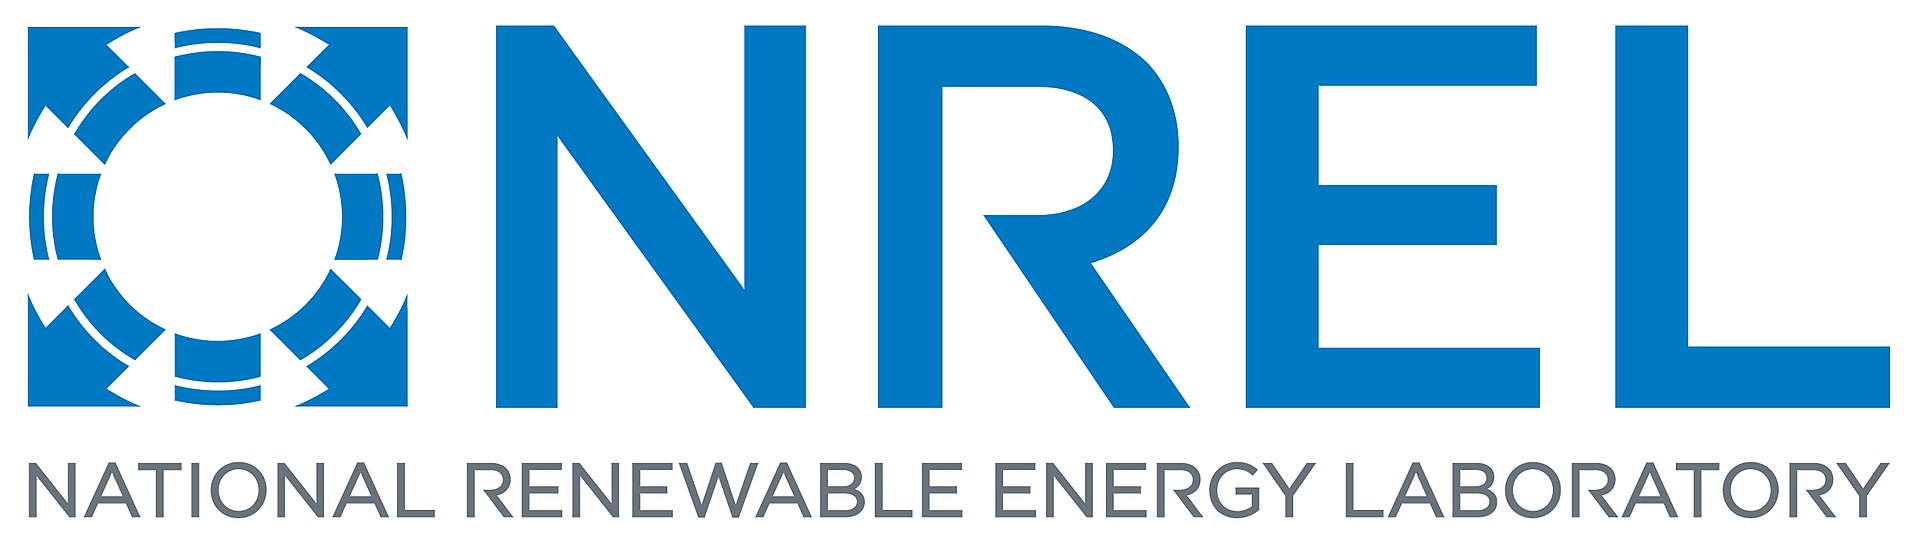 U.S. Department of Energy - NREL - National Renewable Energy Laboratory - Национальная лаборатория по изучению возобновляемой энергии